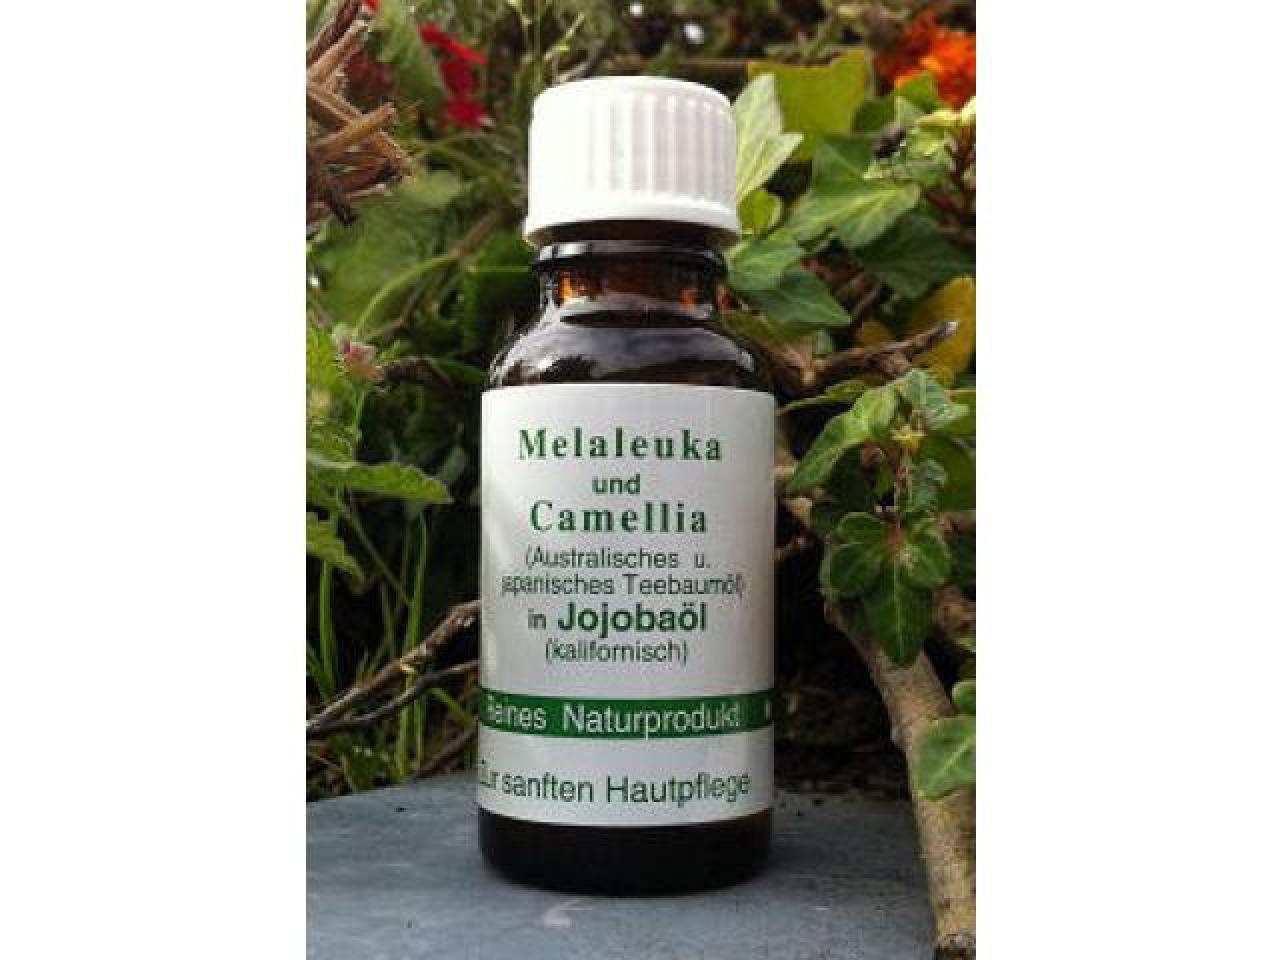 OMEGA - Melaleuka und Camellia in Jojobaöl 20 ml